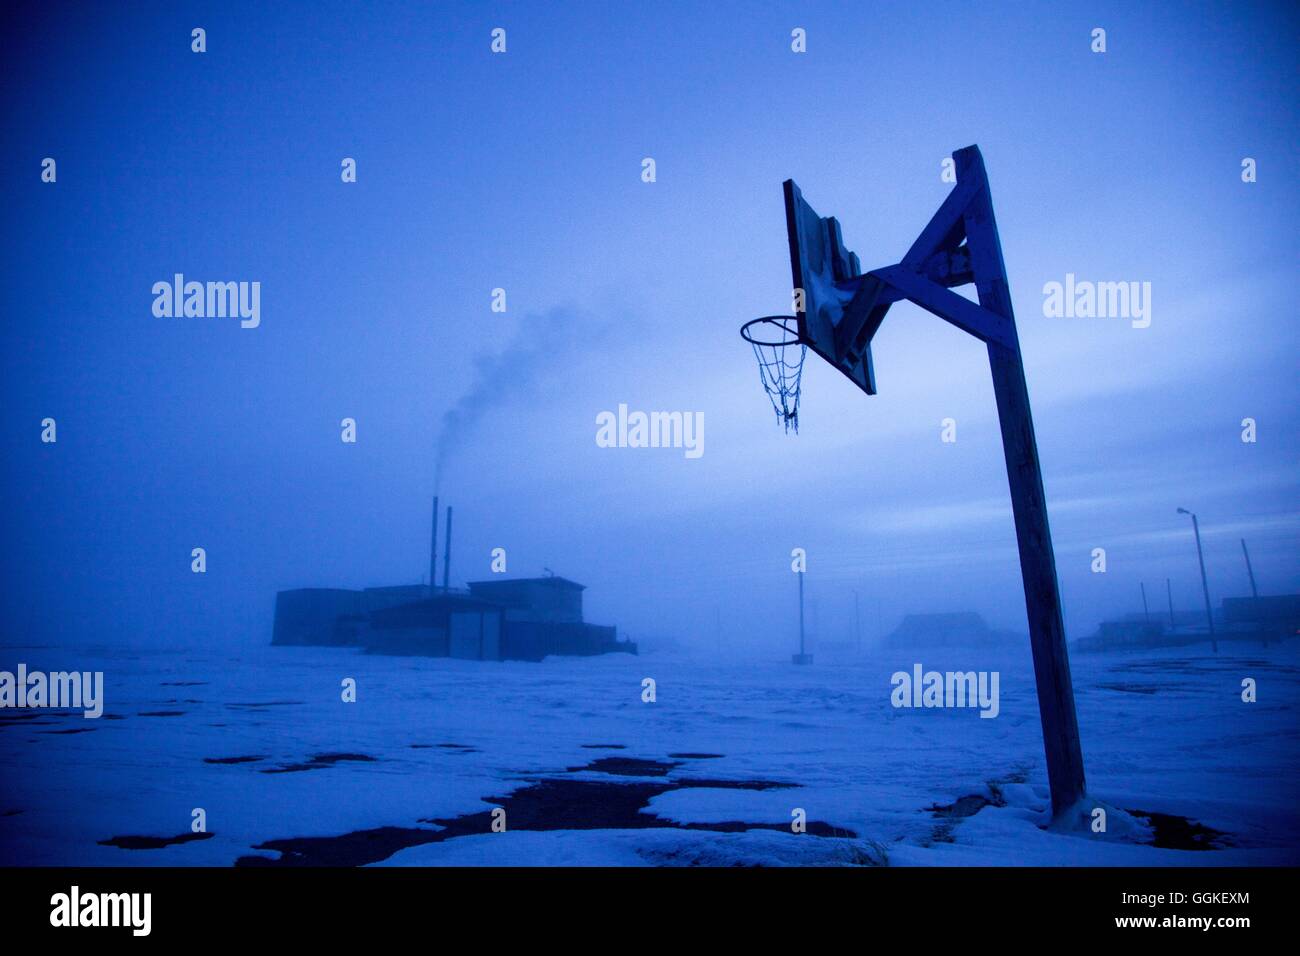 La neige de basket-ball à l'aube dans Uelkal, de l'Armée de Sibérie, Russie Banque D'Images